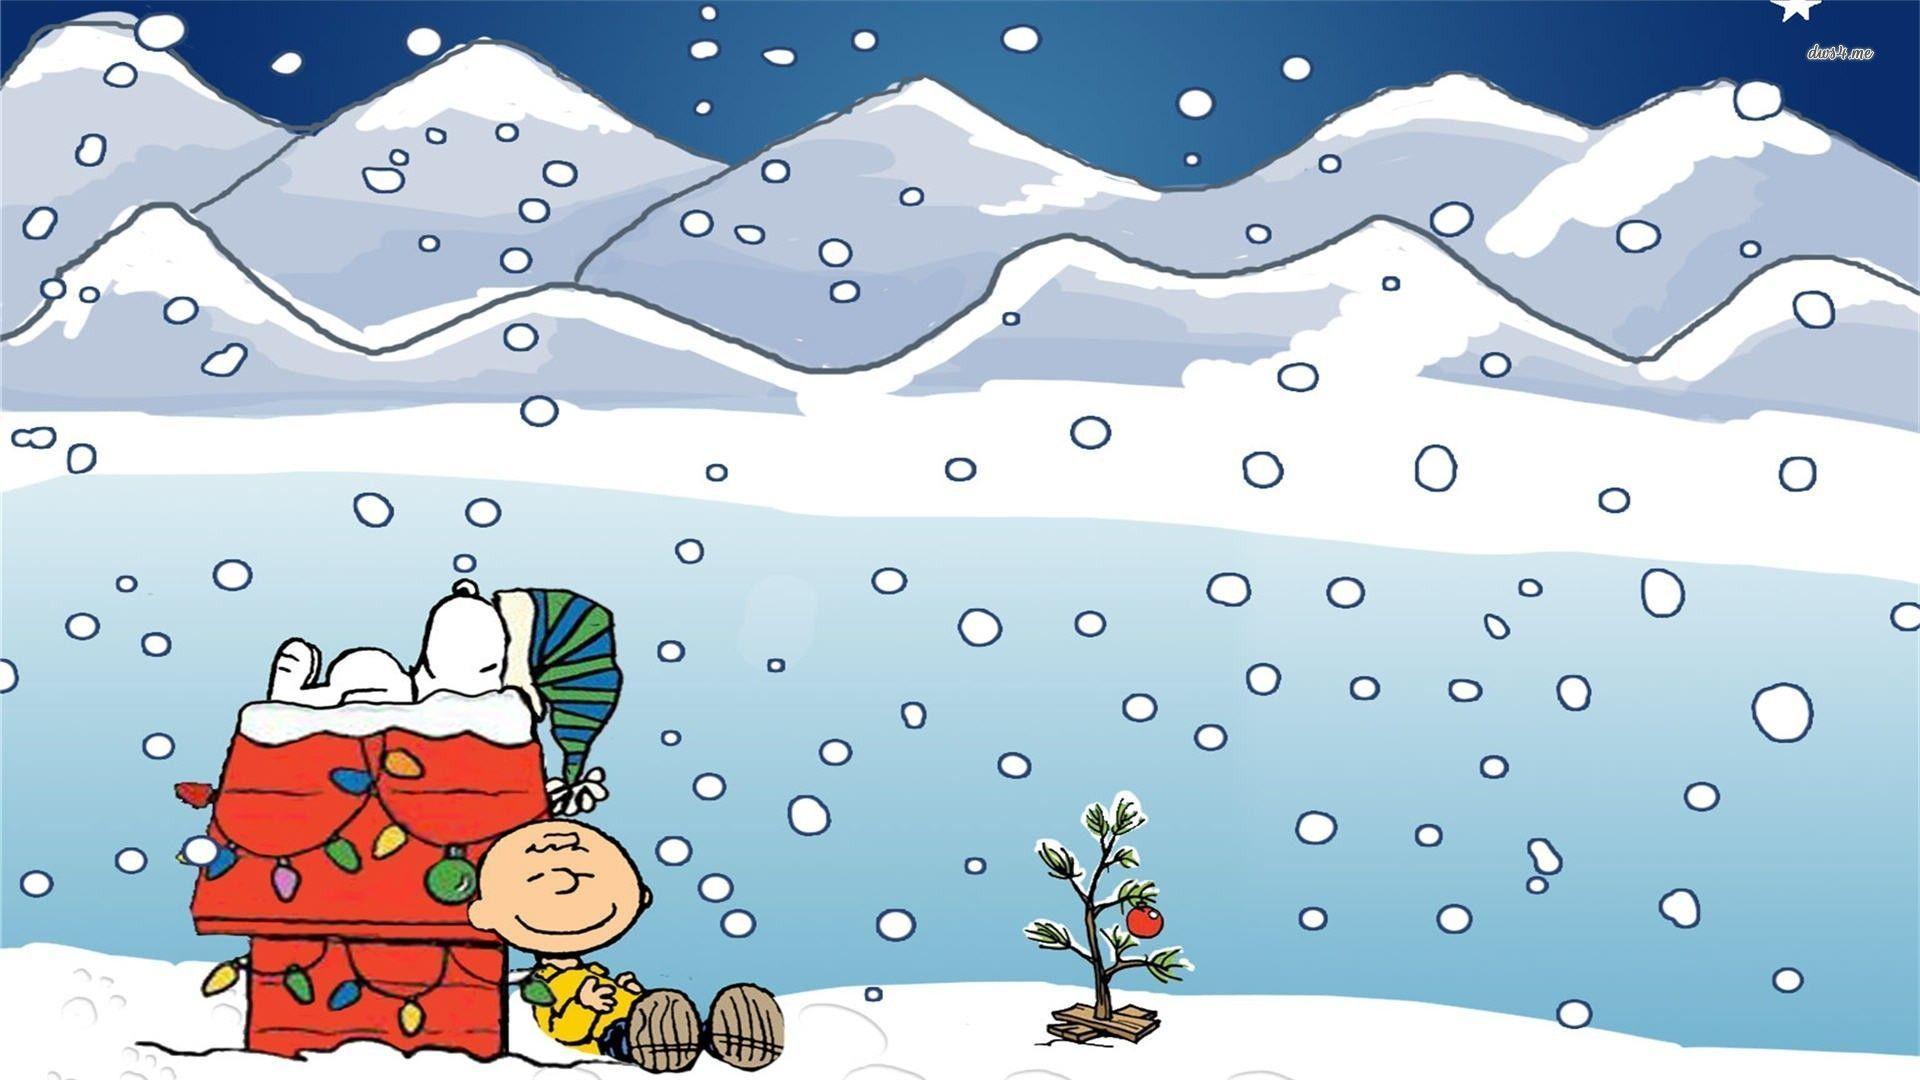 Nền Snoopy Giáng Sinh miễn phí tuyệt đẹp và đầy phù hợp với bầu không khí Noel đang tới. Những bức ảnh chỉnh sửa chuyên nghiệp với Snoopy và nhóm bạn sẽ mang lại cho bạn một trải nghiệm in ấn và tuyệt vời khi tải về dễ dàng từ trang web của chúng tôi!